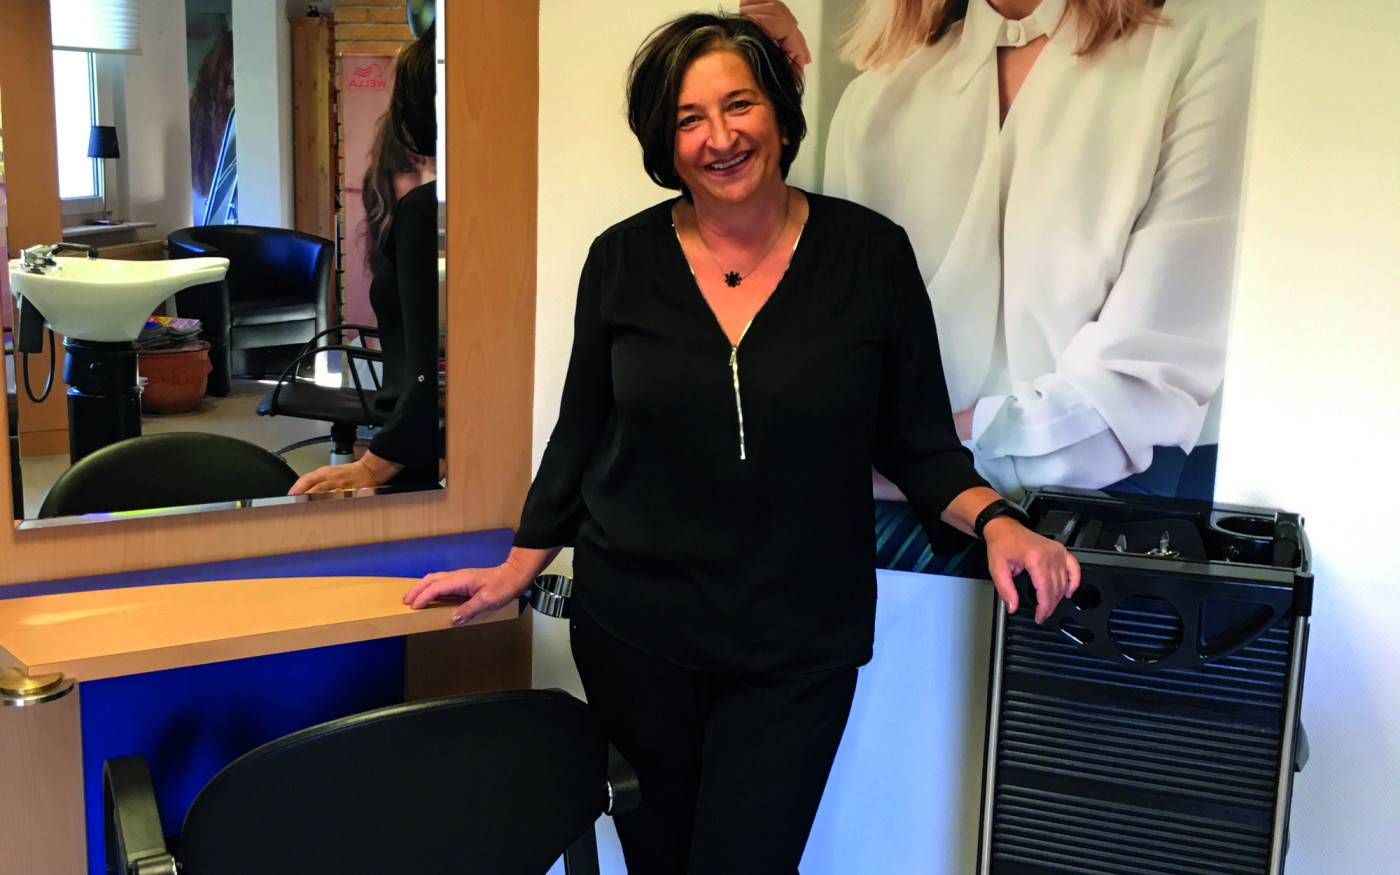 Kreativ und kompetent: Friseurmeisterin Gabriele Kolbe schließt nach 24 Jahren ihr Friseurgeschäft